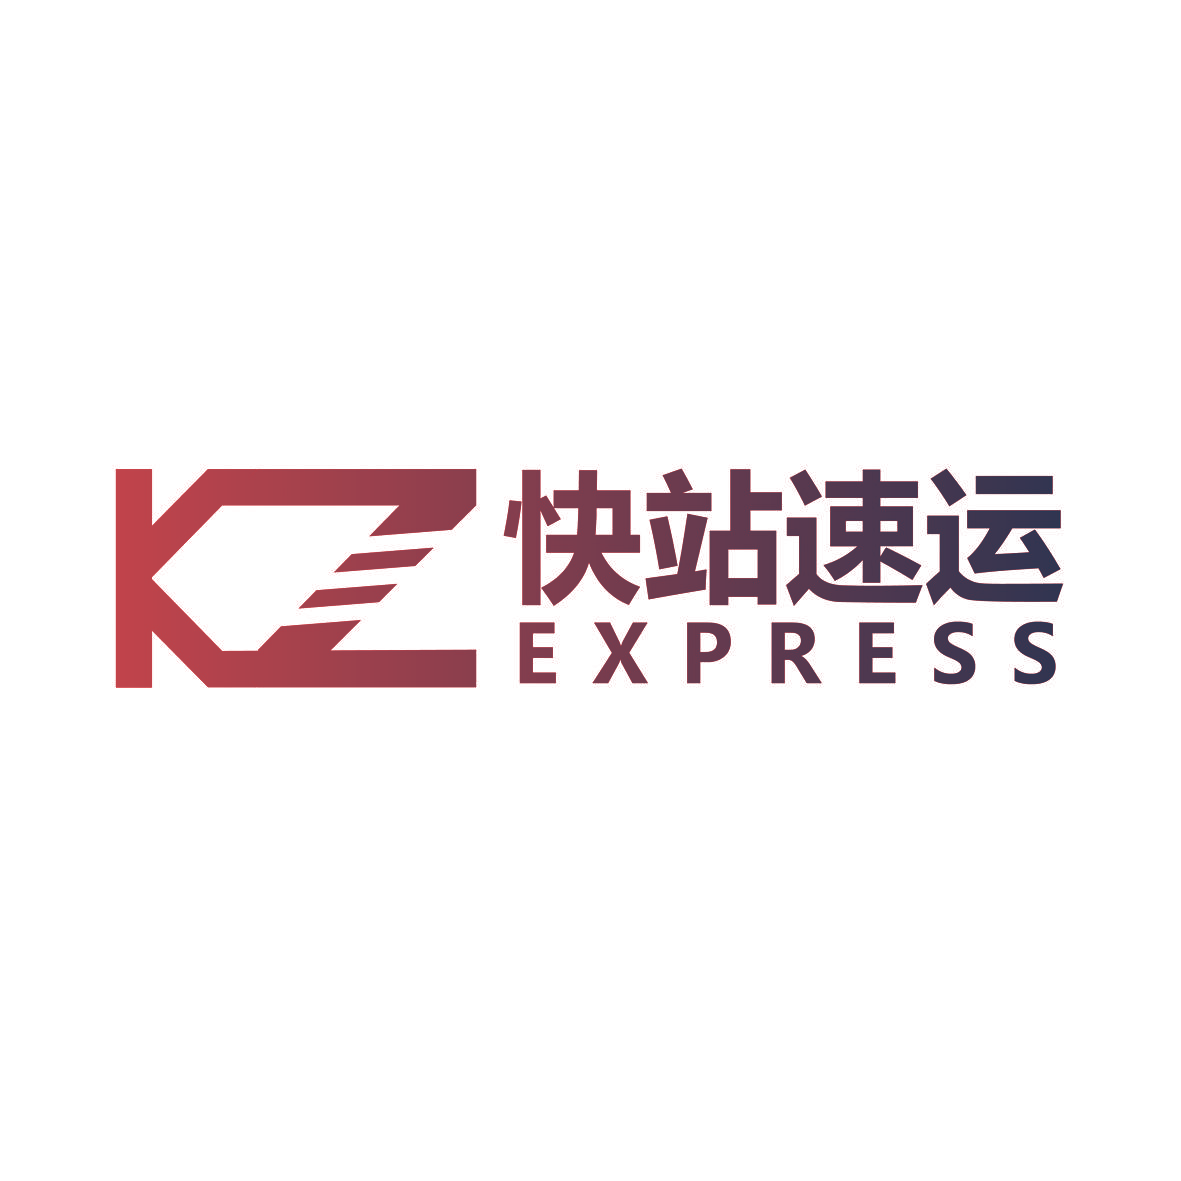 快站速运 KZ EXPRESS